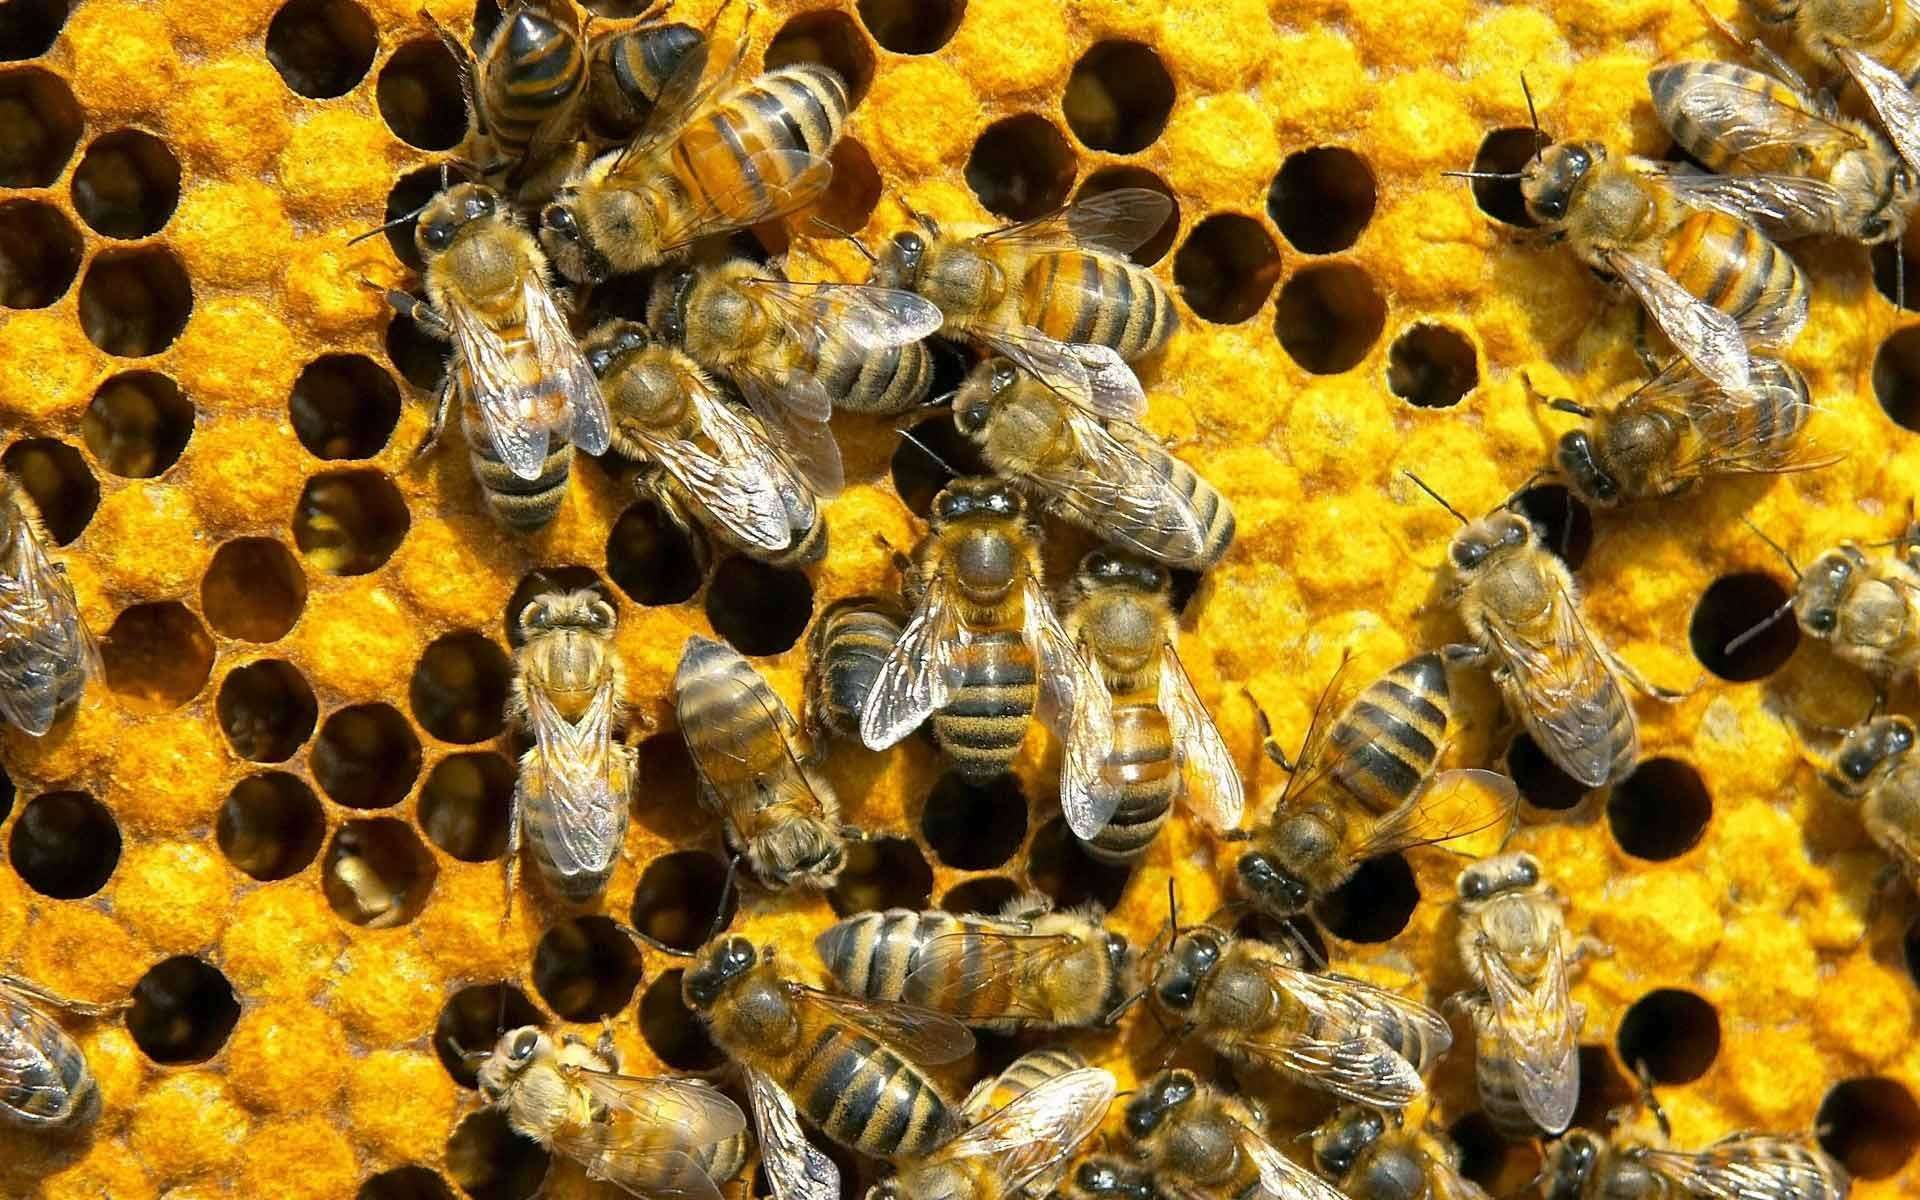 जब एक साथ 400 मधुमक्खियां मरी हुई मिली, जानिए क्या था इसके पीछे का कारण?